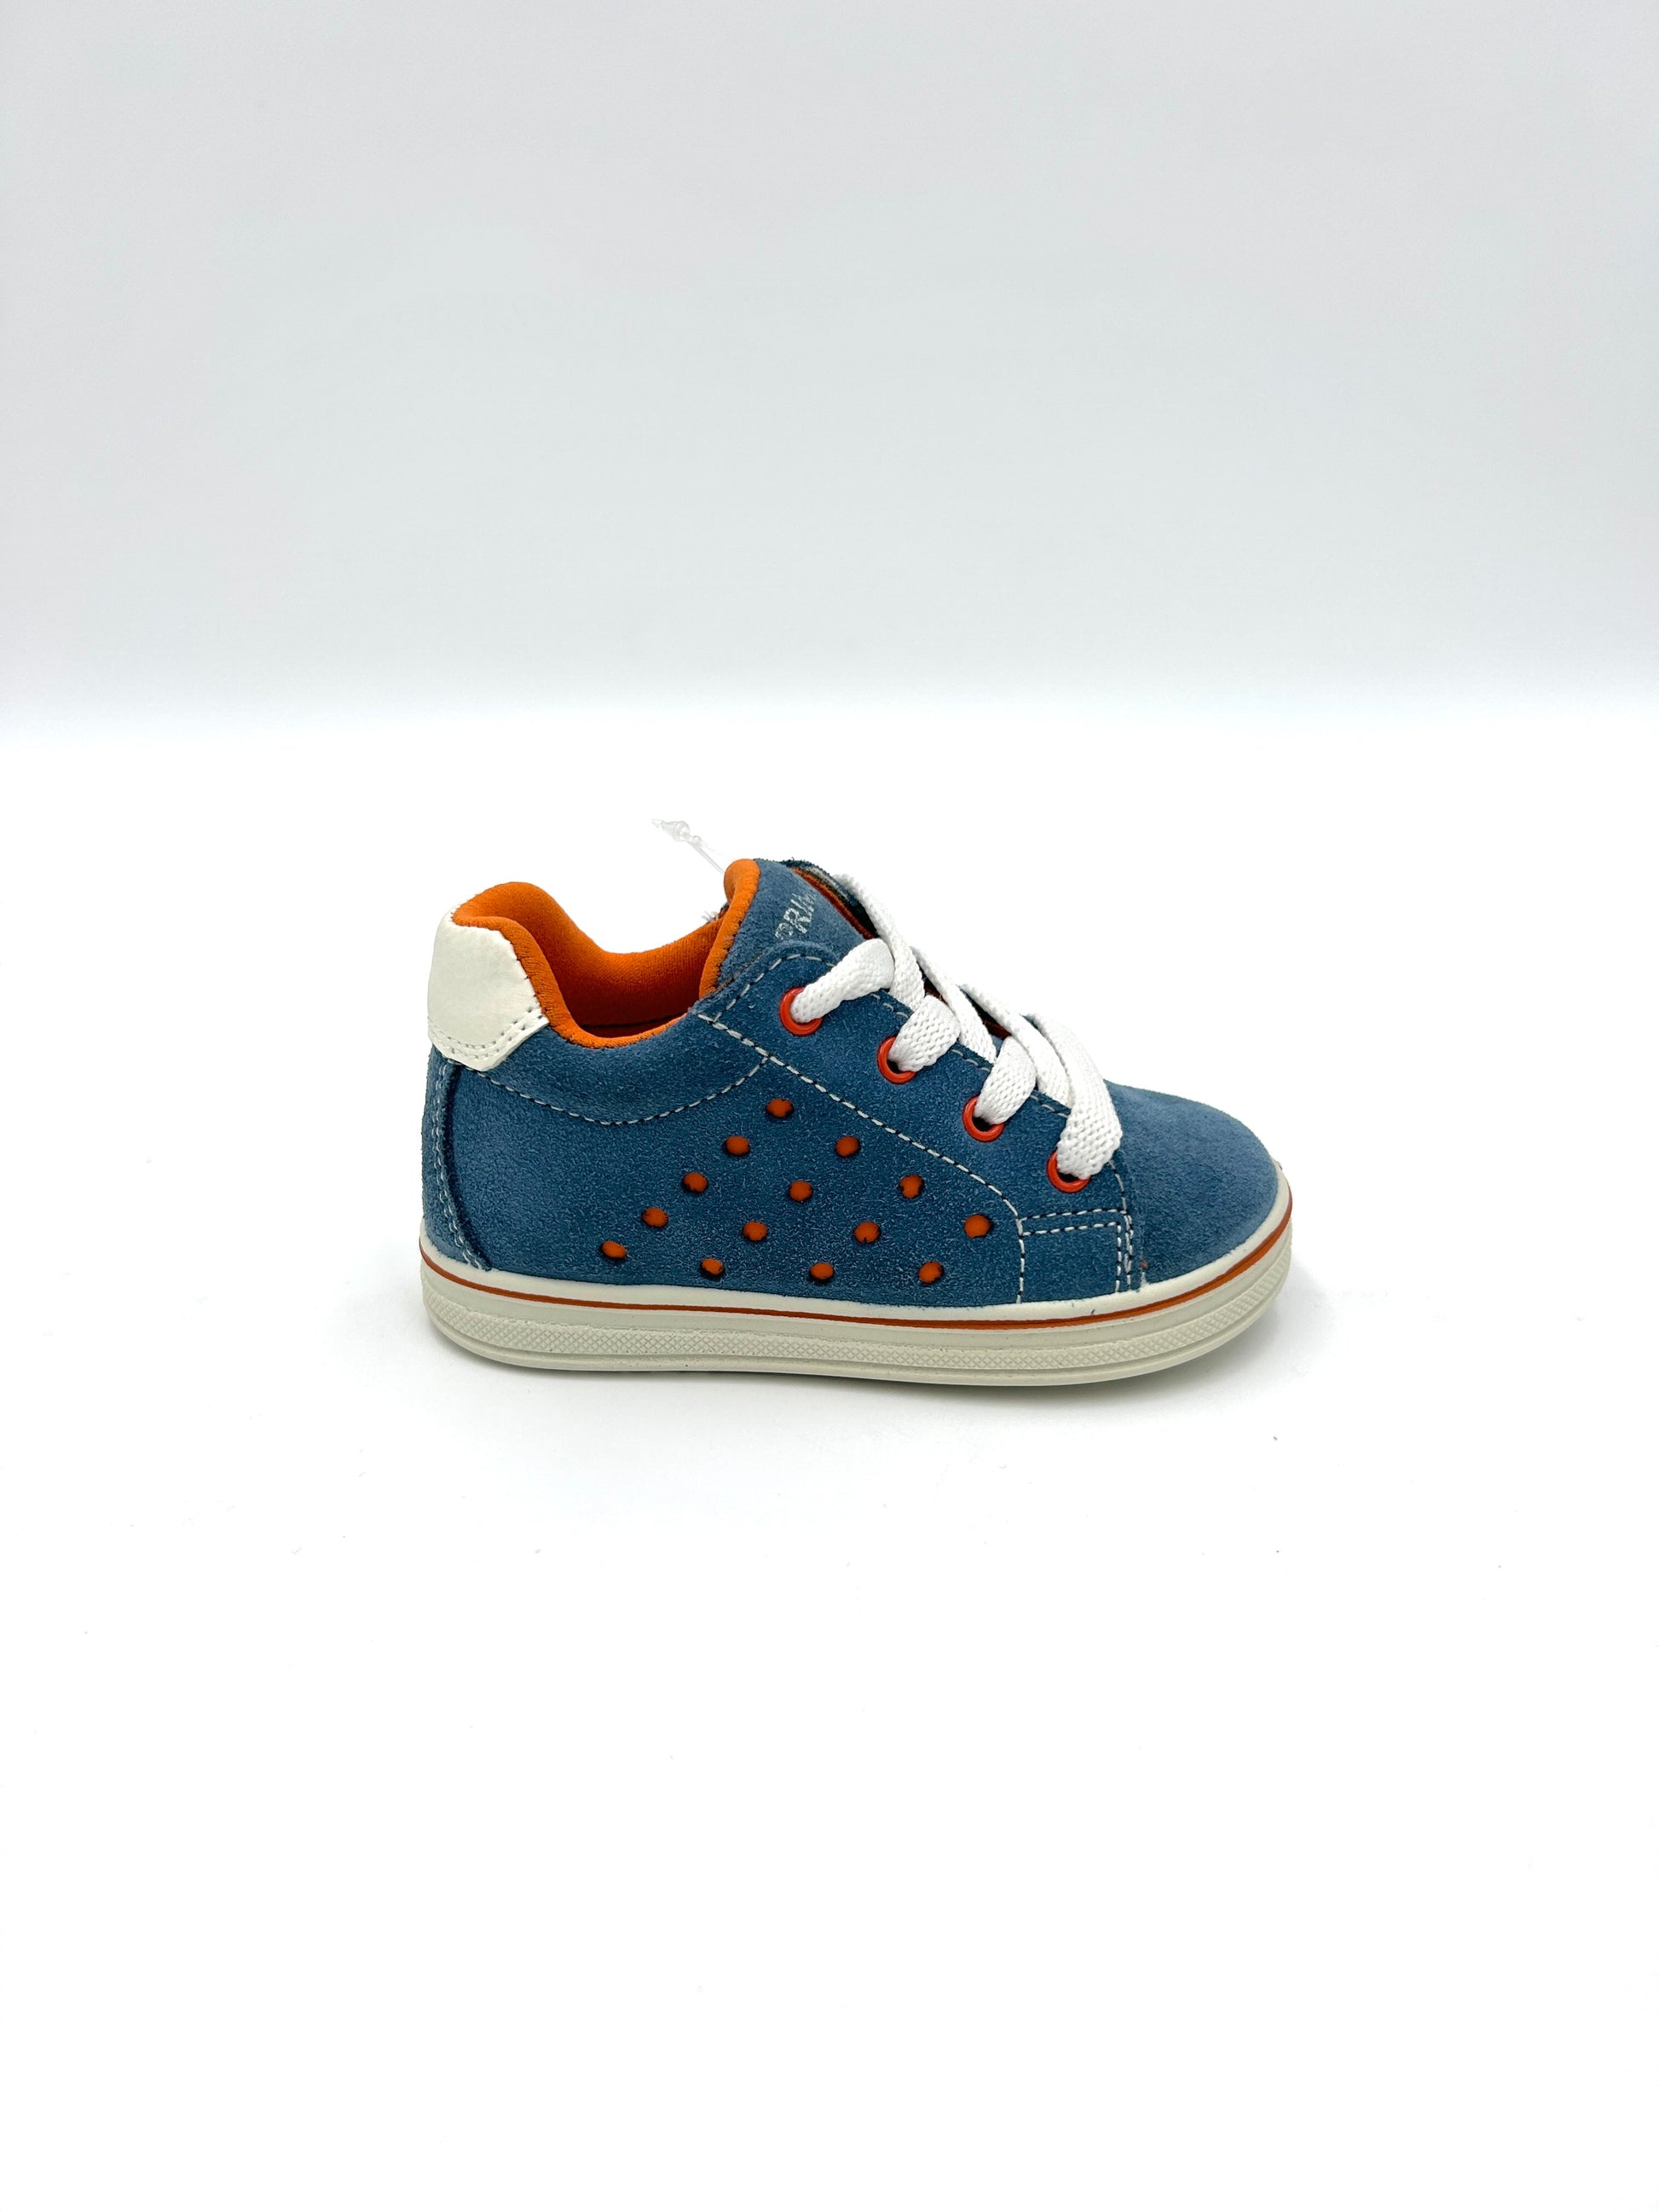 Primigi Sneakers kids lacci - blu e arancione - Primigi